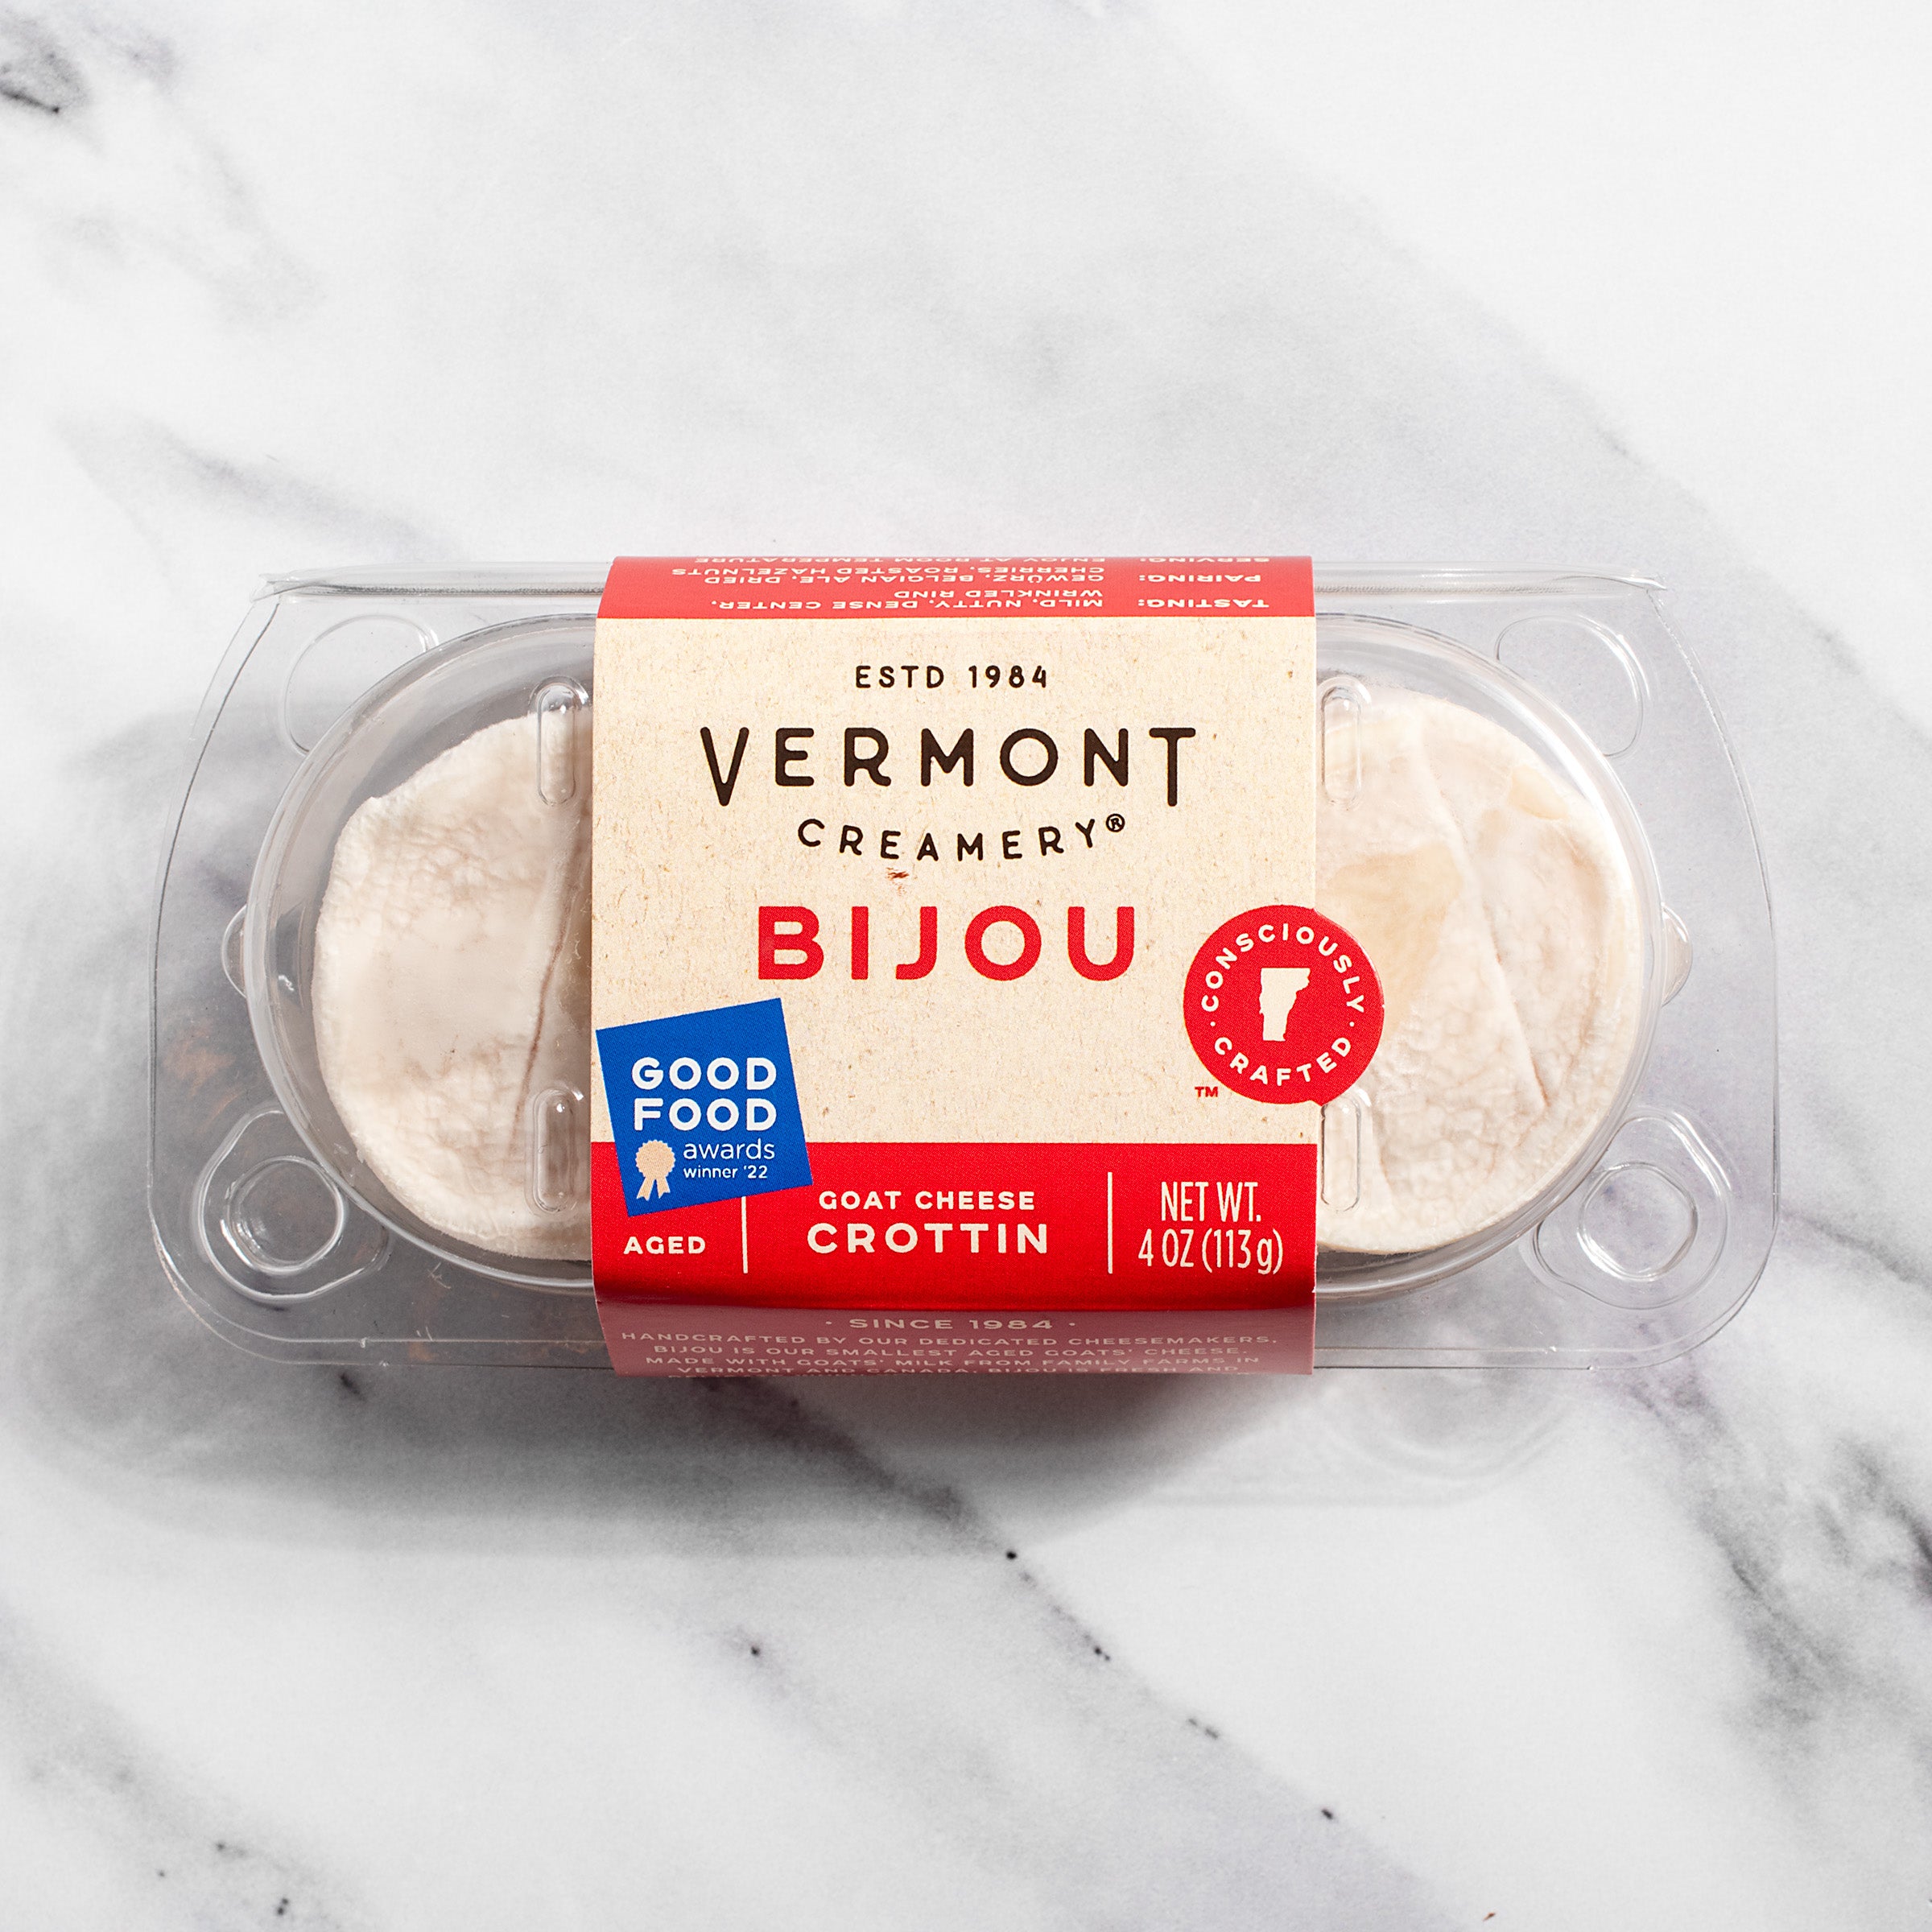 Bijou by Vermont igourmet Creamery –